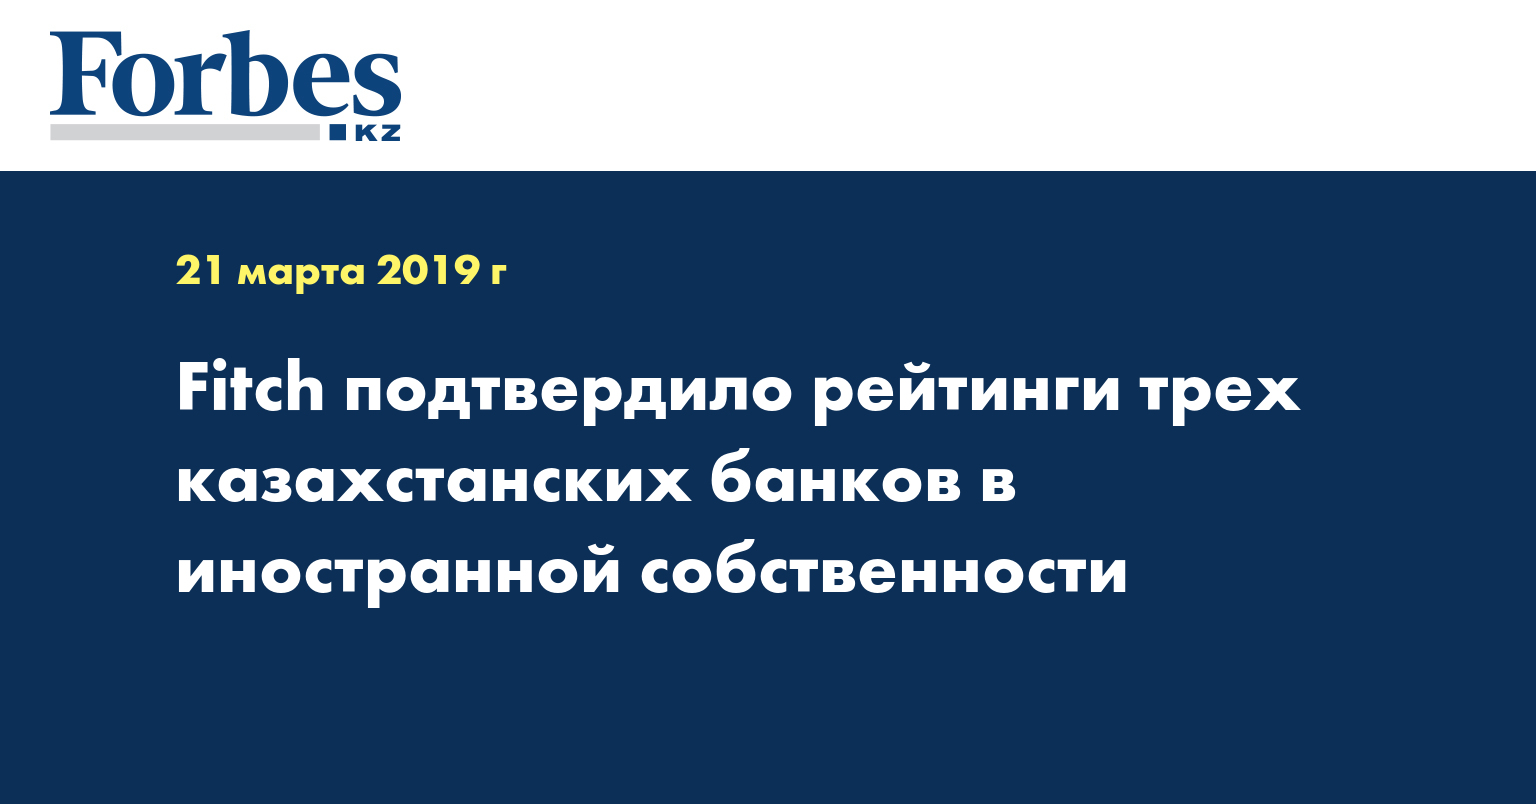 Fitch подтвердило рейтинги трех казахстанских банков в иностранной собственности